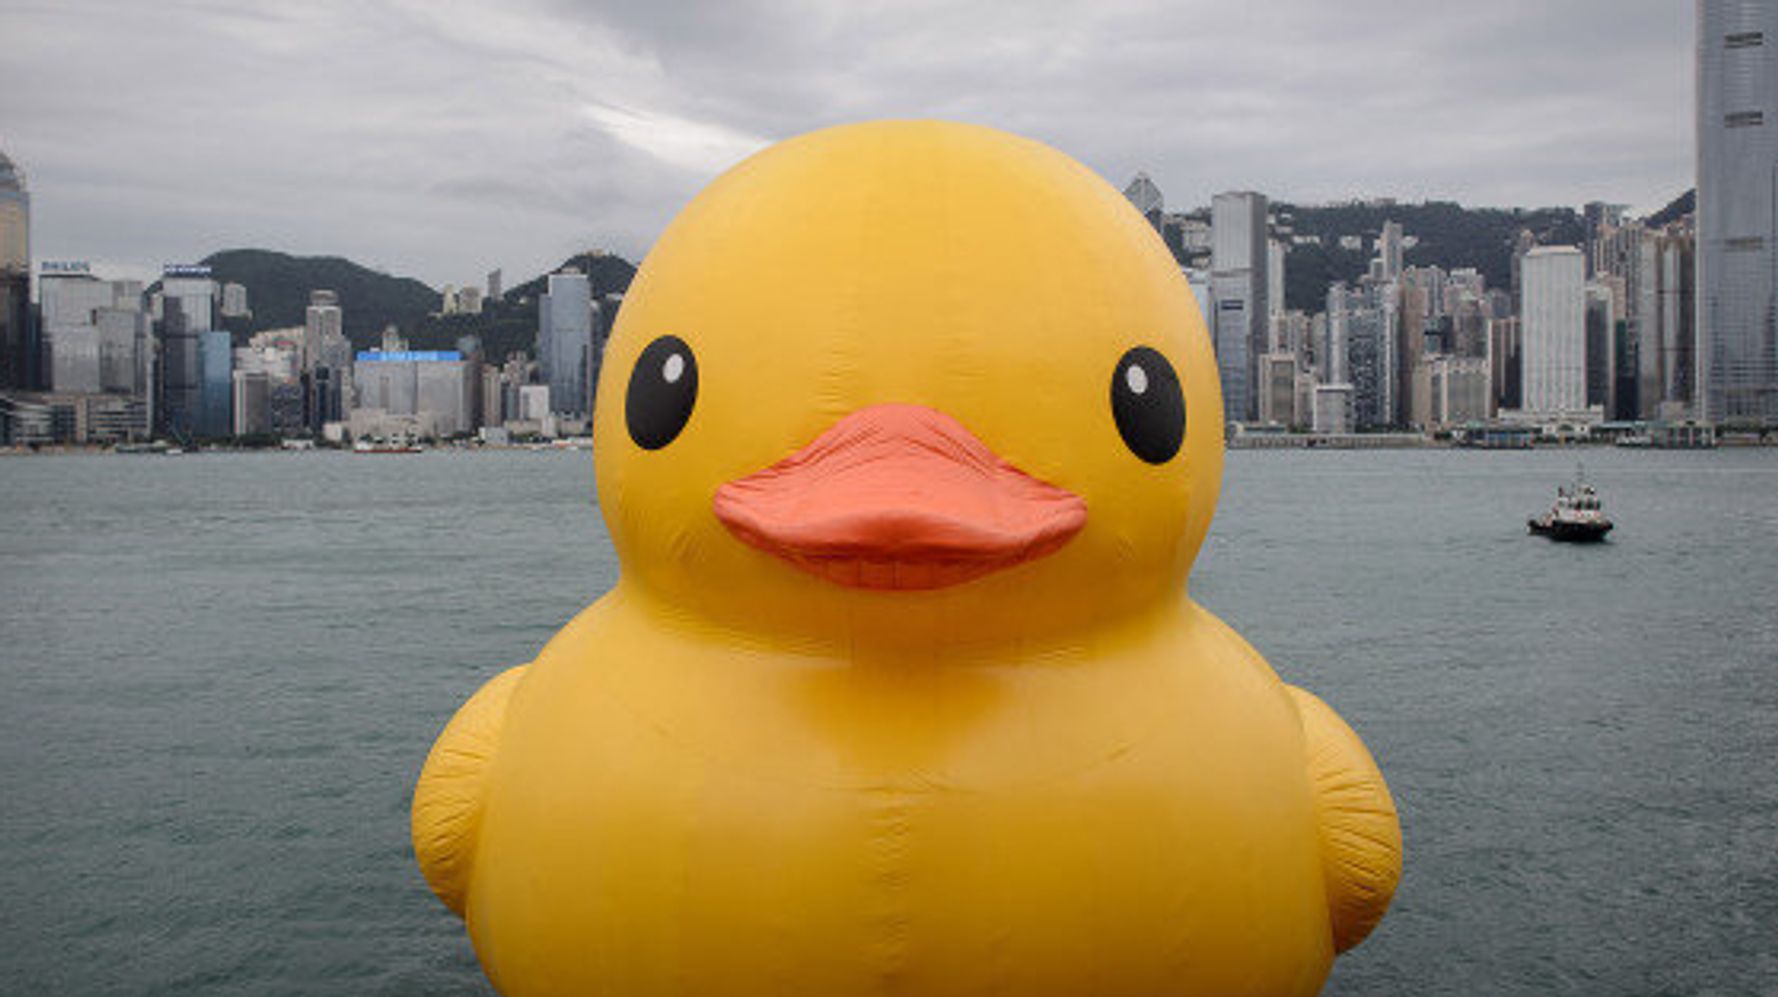 Le canard géant de retour à Hong Kong 10 ans plus tard